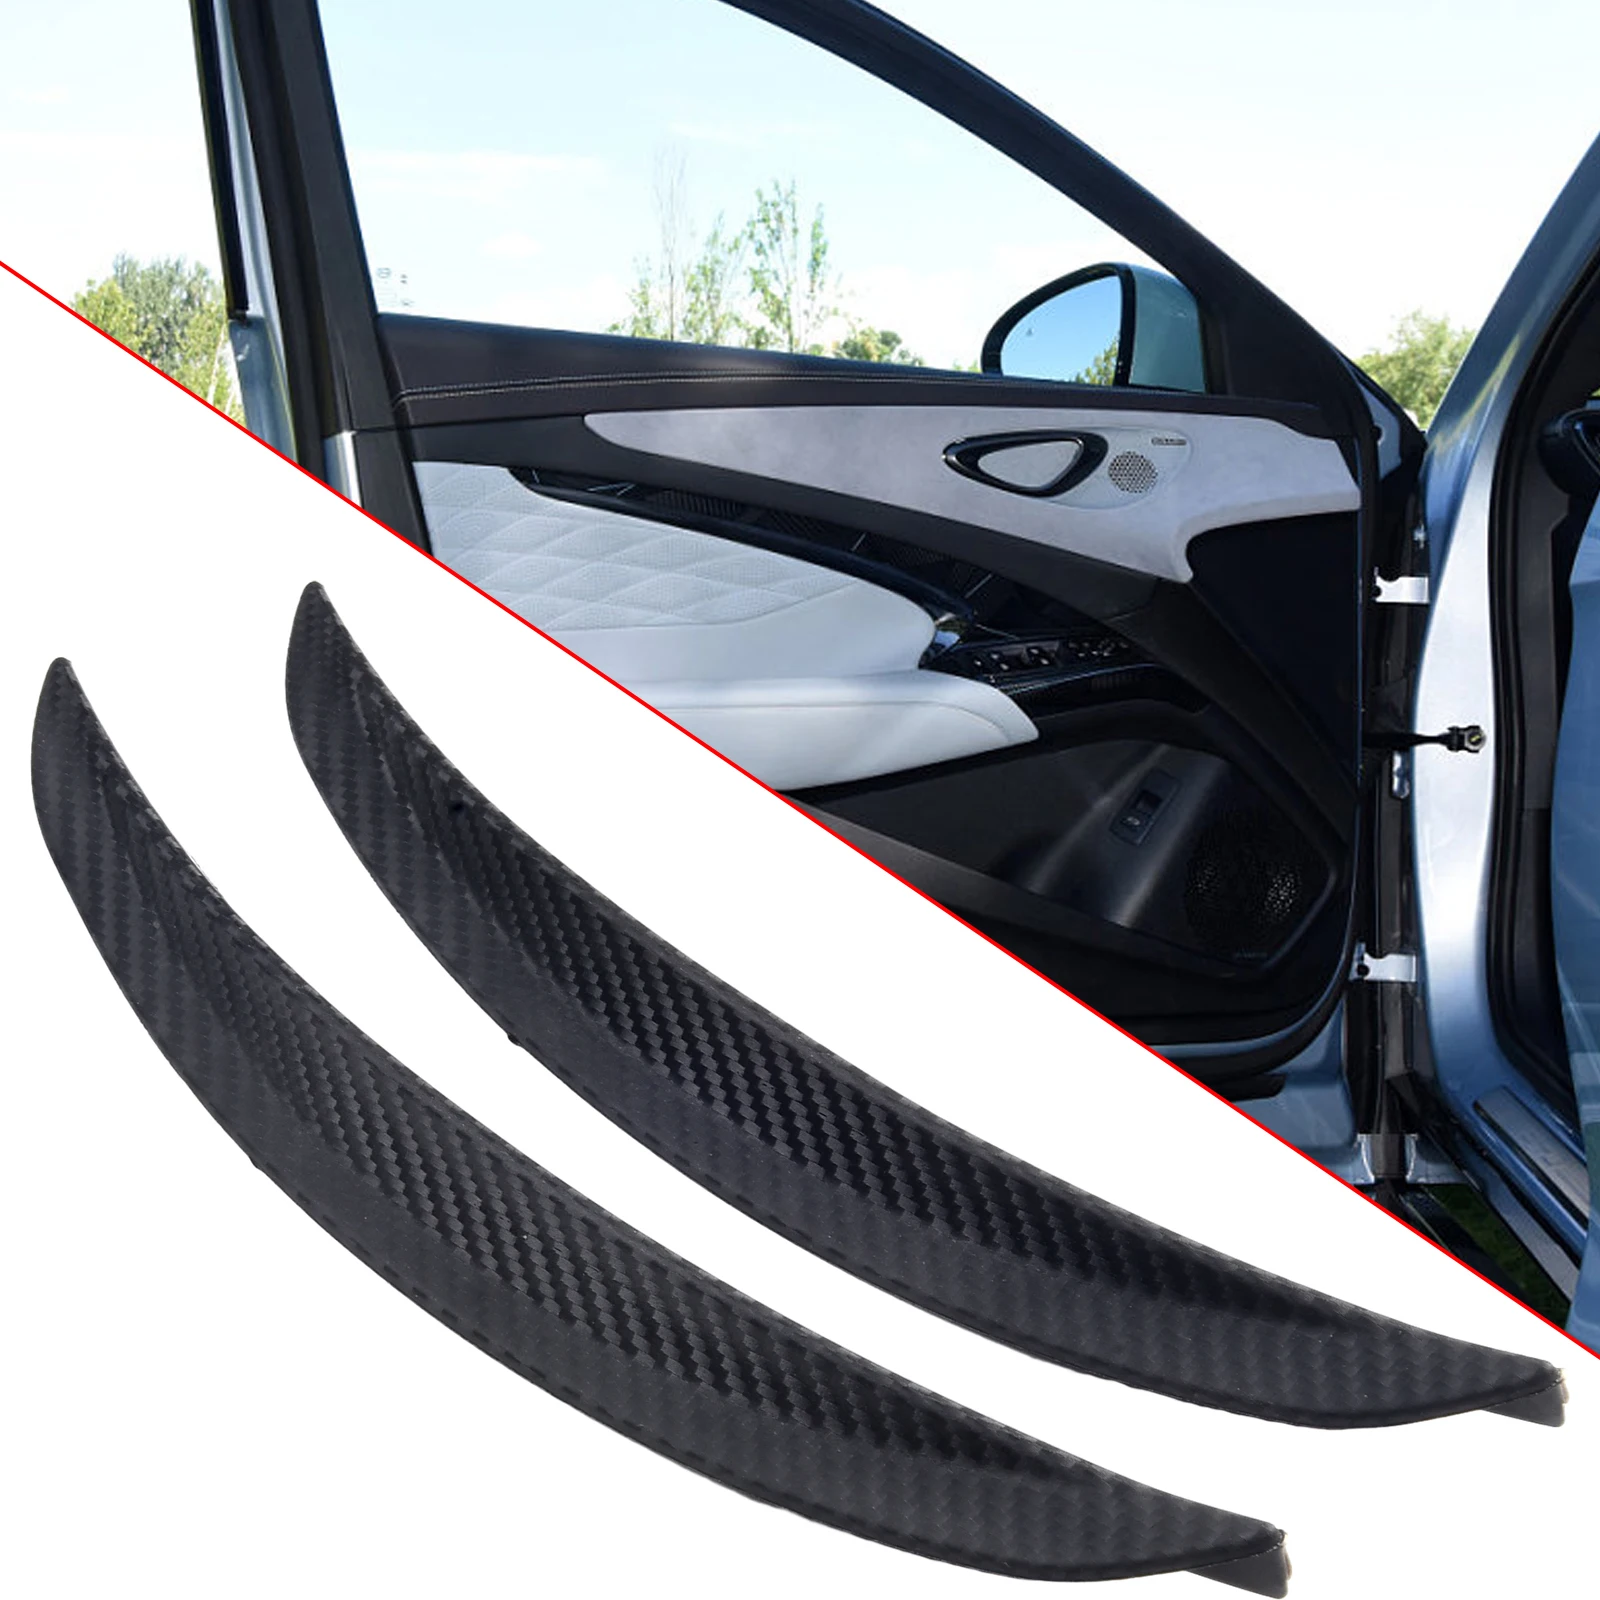 

Lip Strips Protection Strip 2 Pcs/set Car Accessories Carbon Fiber Black Replacement Rubber Splash Guard Parts